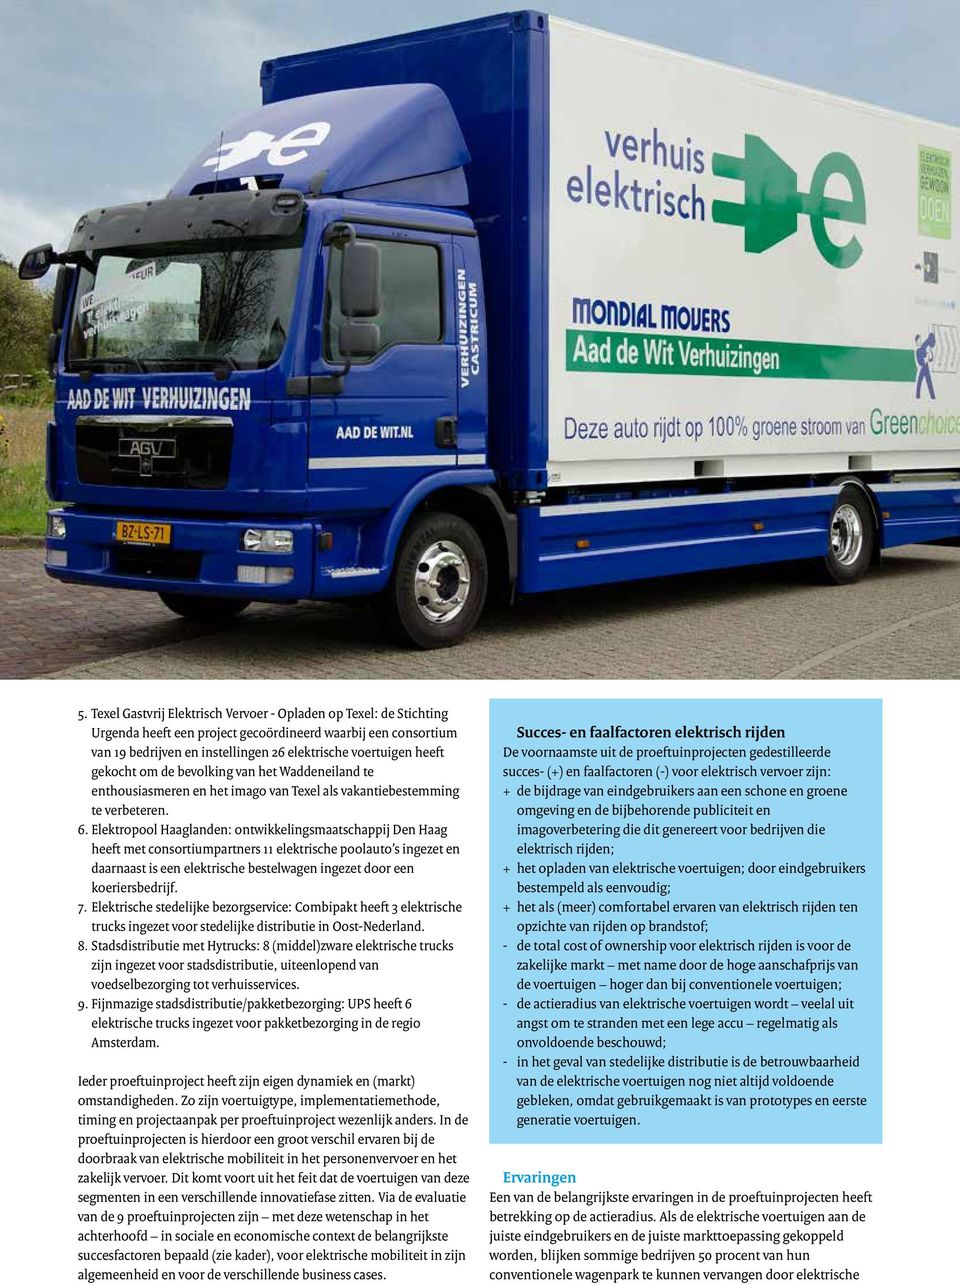 Elektropool Haaglanden: ontwikkelingsmaatschappij Den Haag heeft met consortiumpartners 11 elektrische poolauto s ingezet en daarnaast is een elektrische bestelwagen ingezet door een koeriersbedrijf.